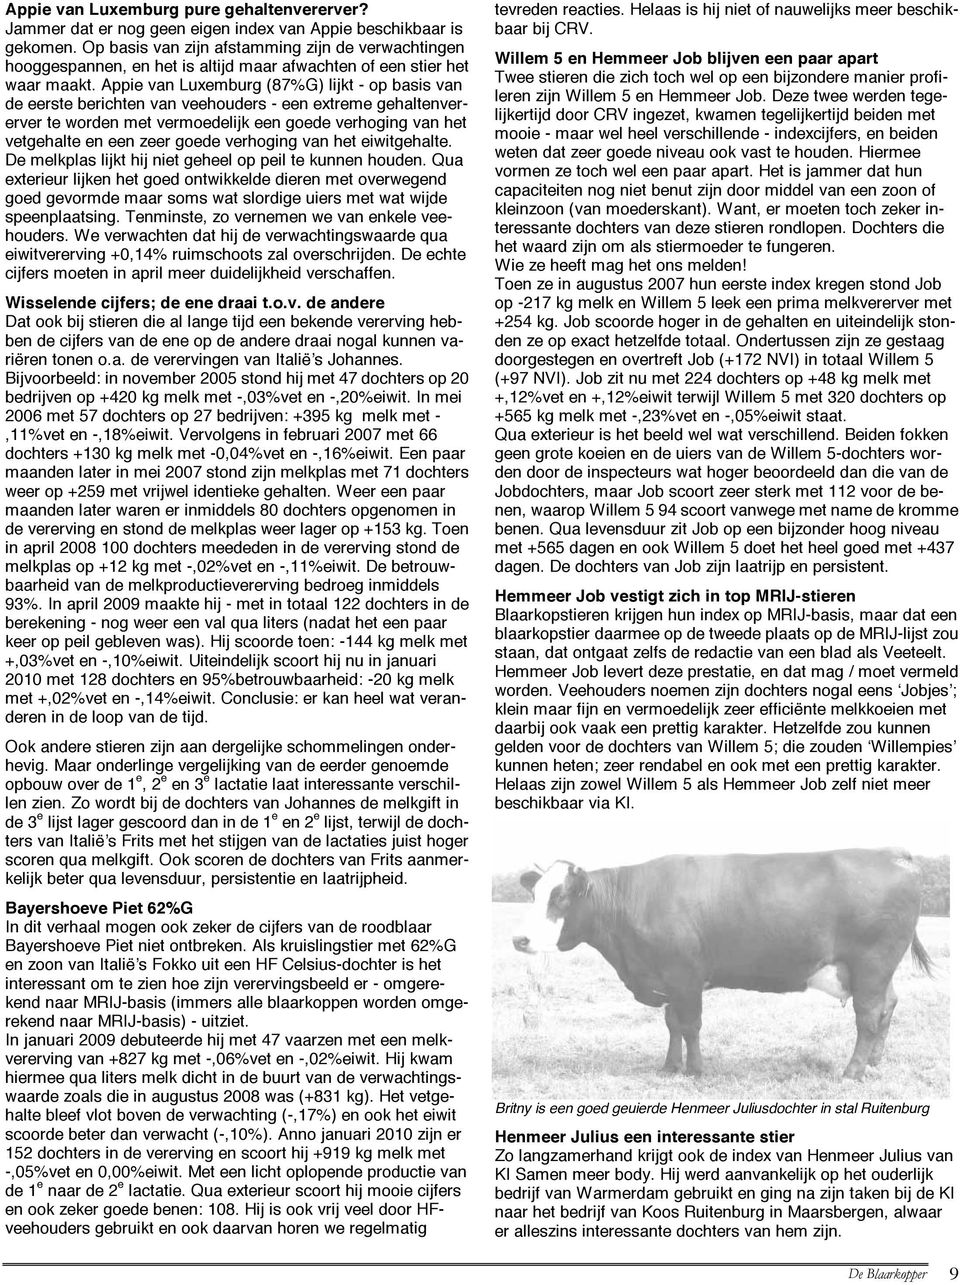 Appie van Luxemburg (87%G) lijkt - op basis van de eerste berichten van veehouders - een extreme gehaltenvererver te worden met vermoedelijk een goede verhoging van het vetgehalte en een zeer goede